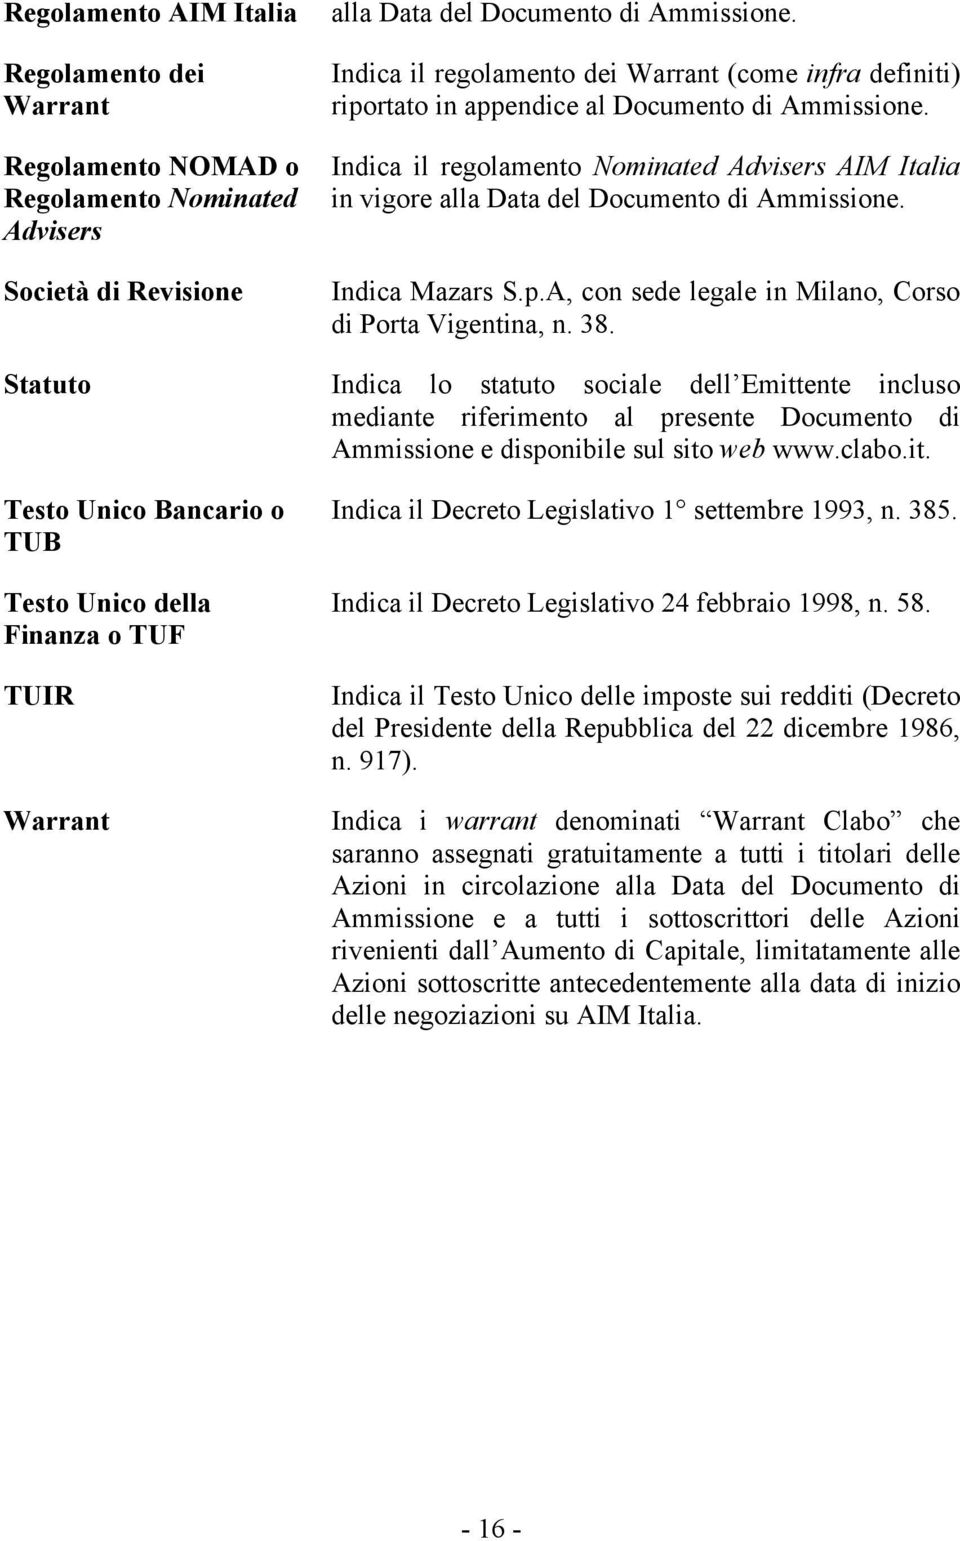 Indica il regolamento Nominated Advisers AIM Italia in vigore alla Data del Documento di Ammissione. Indica Mazars S.p.A, con sede legale in Milano, Corso di Porta Vigentina, n. 38.